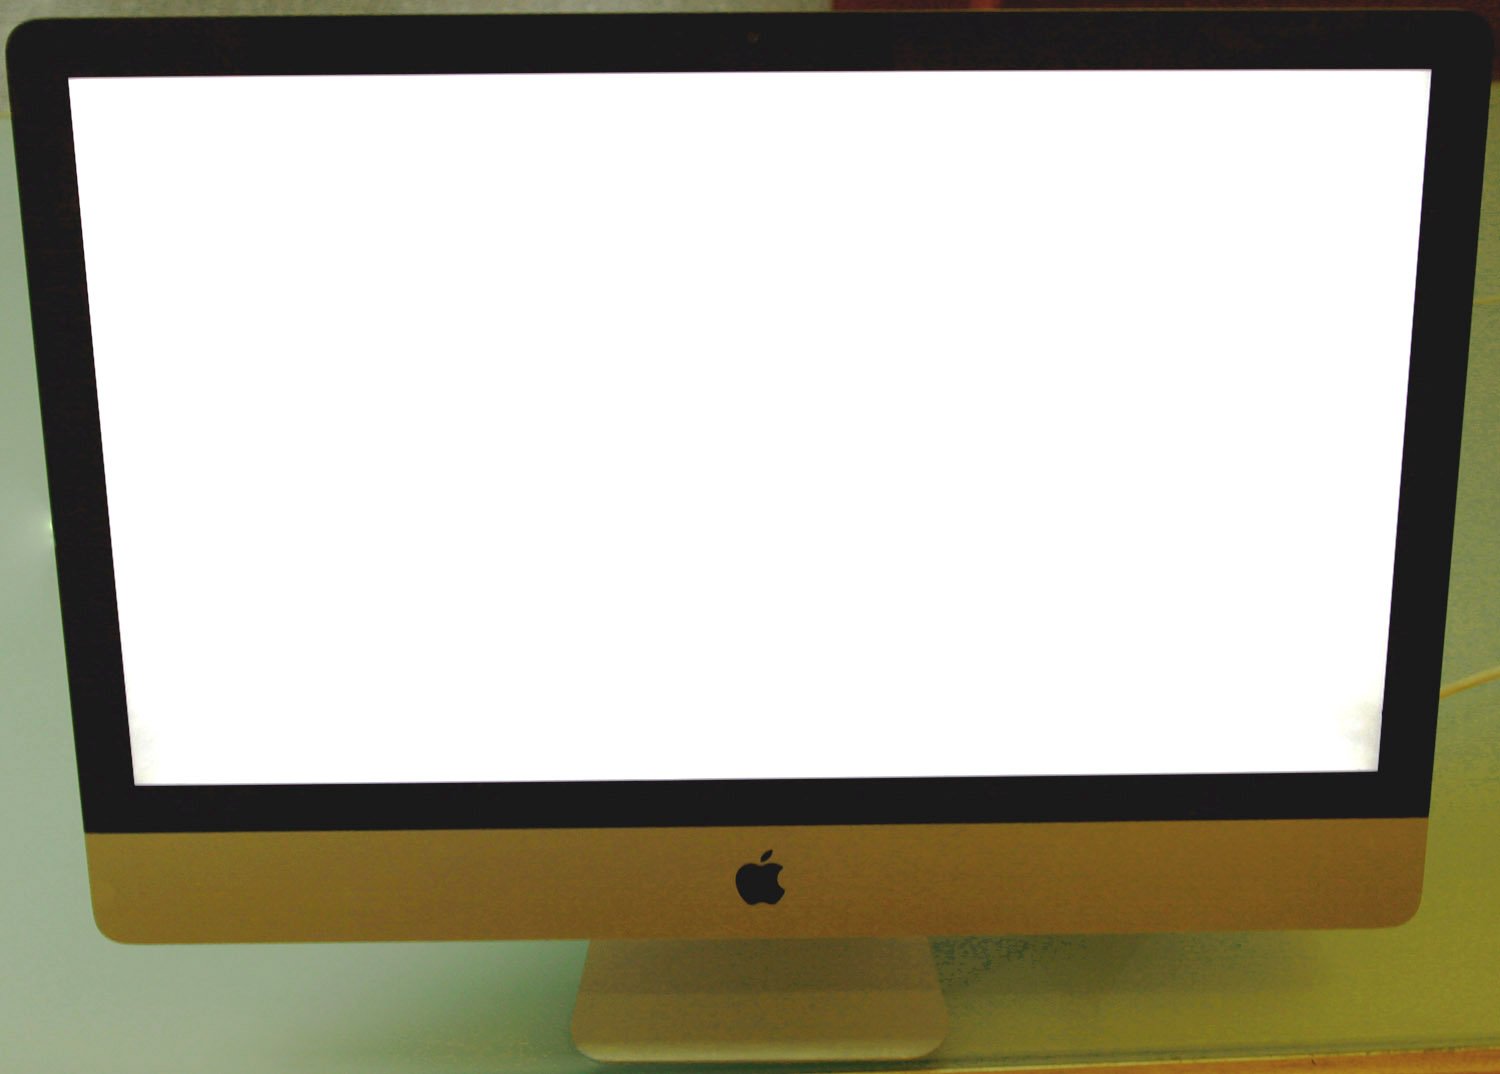 Ein iMac-Display ist beim Hochfahren im Startbildschirm eingefroren. Der Bildschirm ist weiß, der Ball dreht sich nicht mehr bzw der Ladebalken